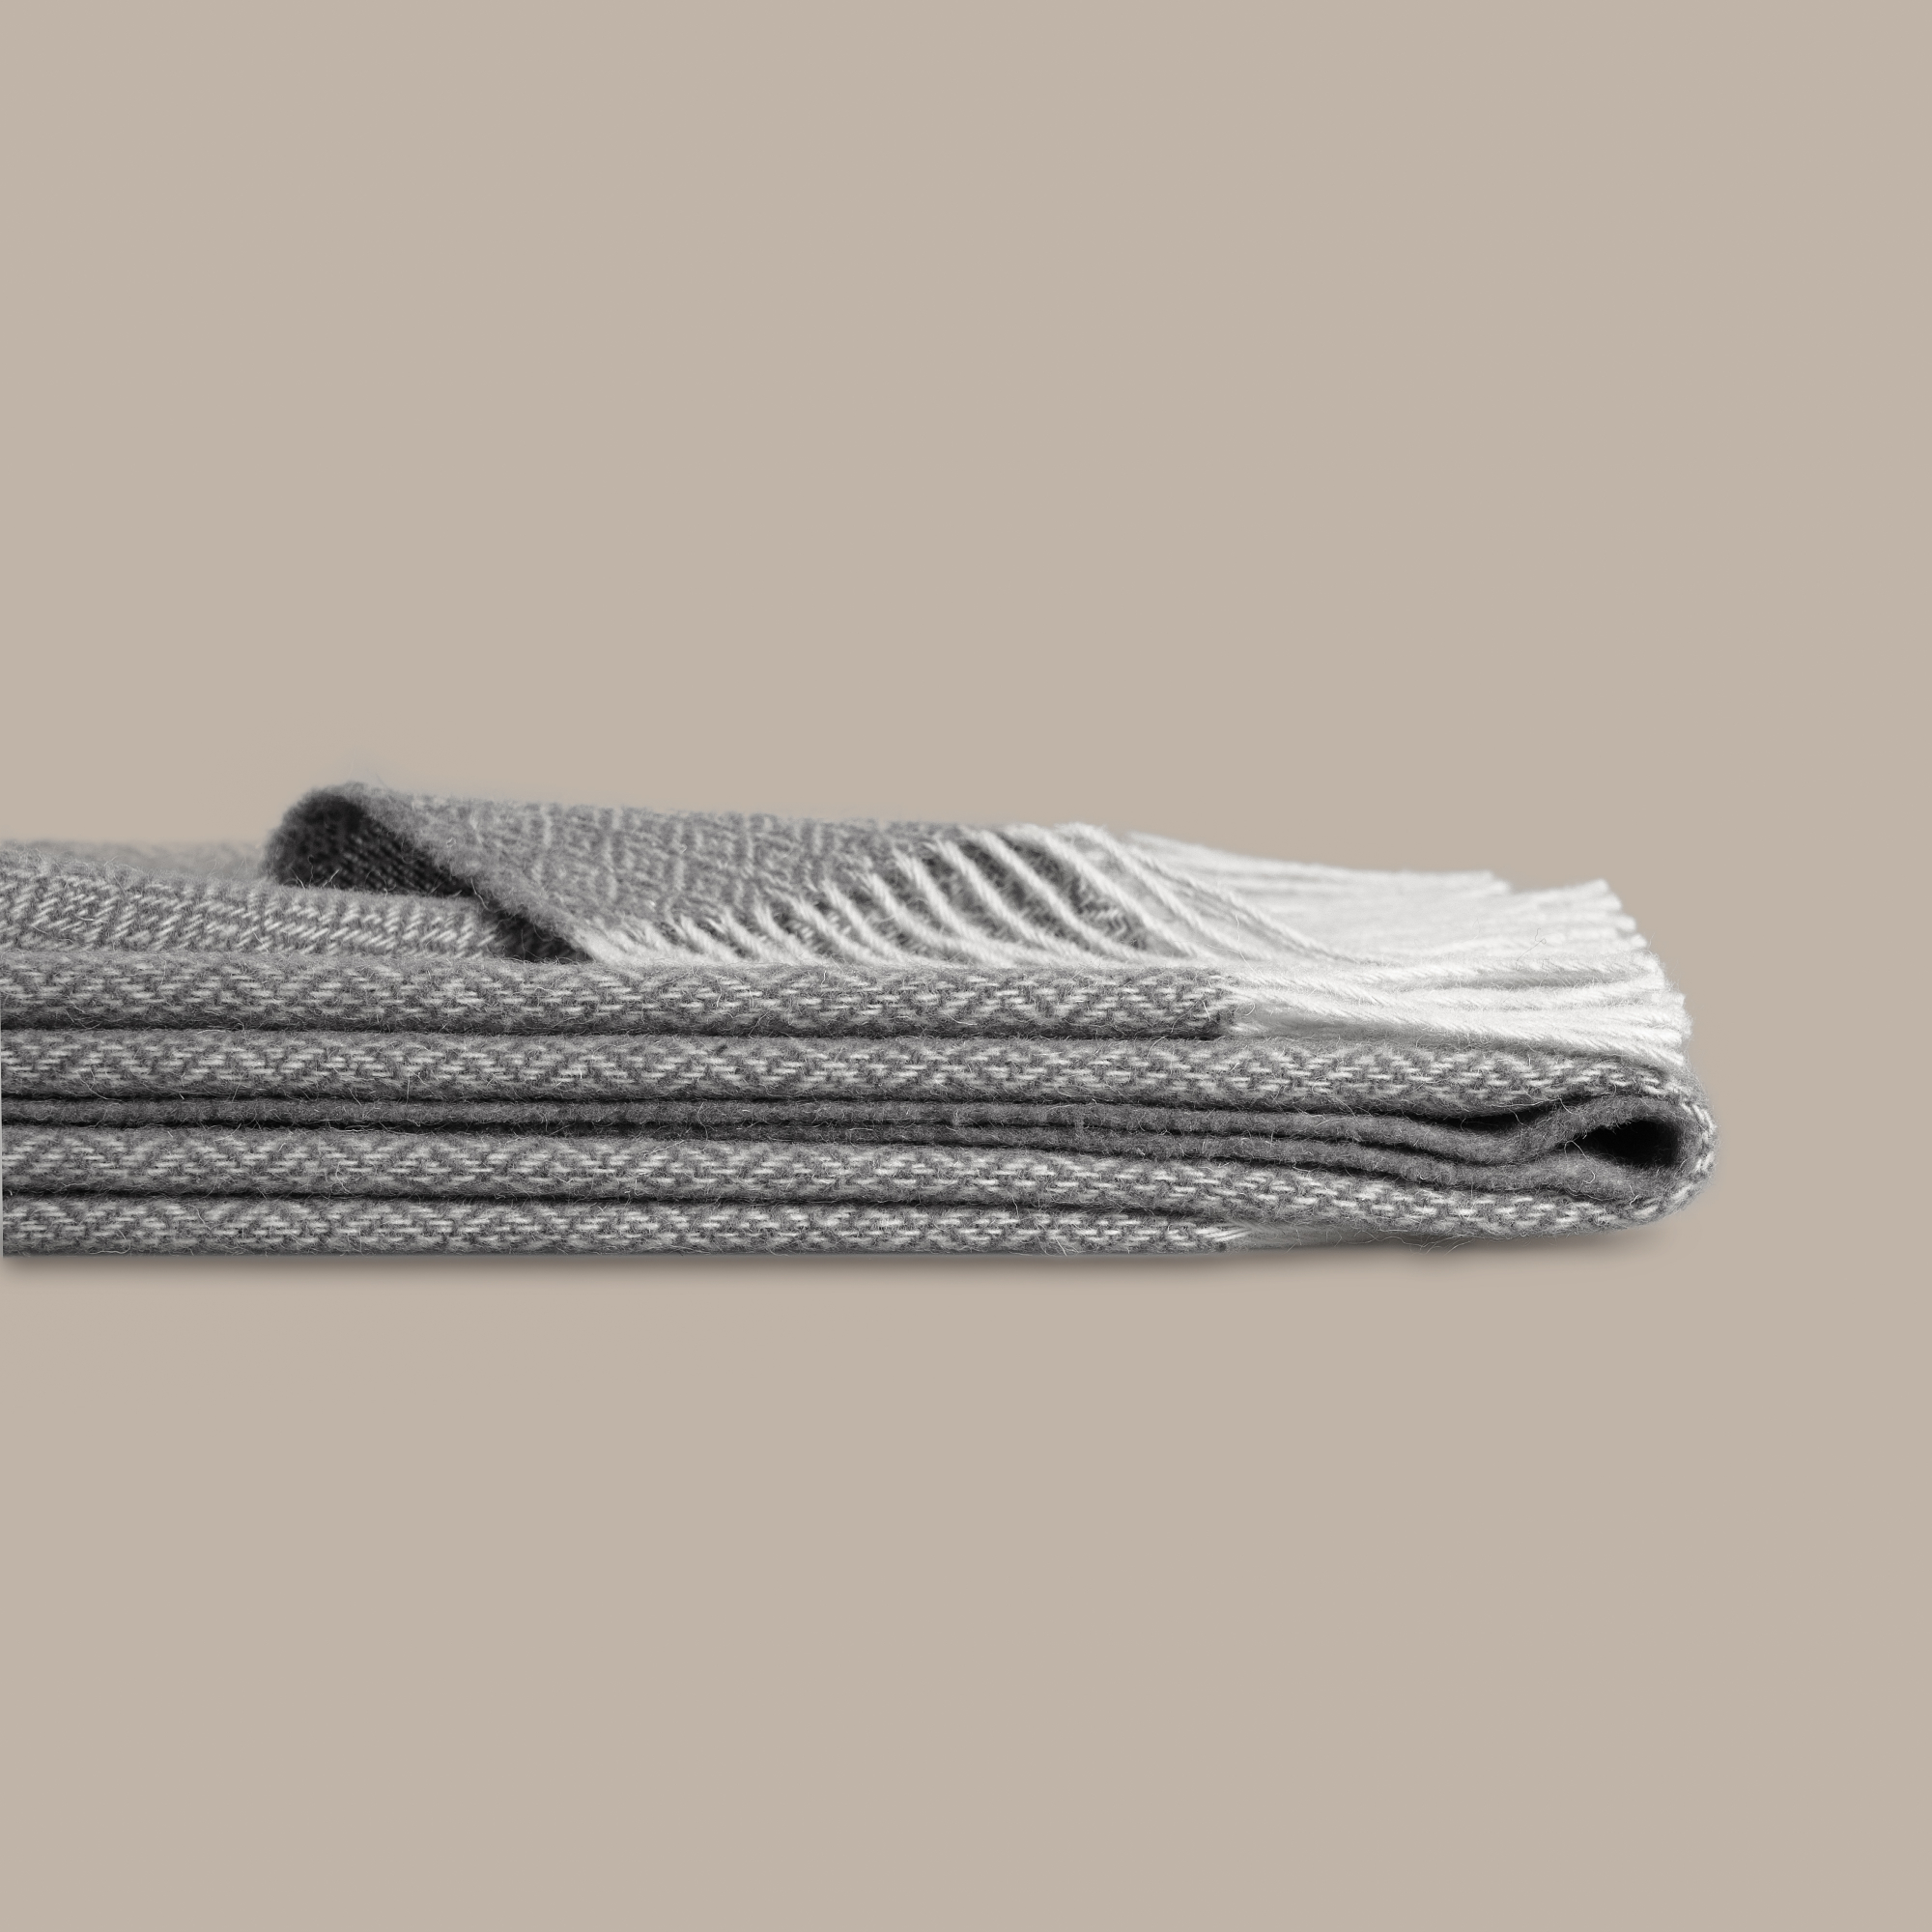 Плед Estia Патино белый с серым 140х200 см, цвет серый - фото 2